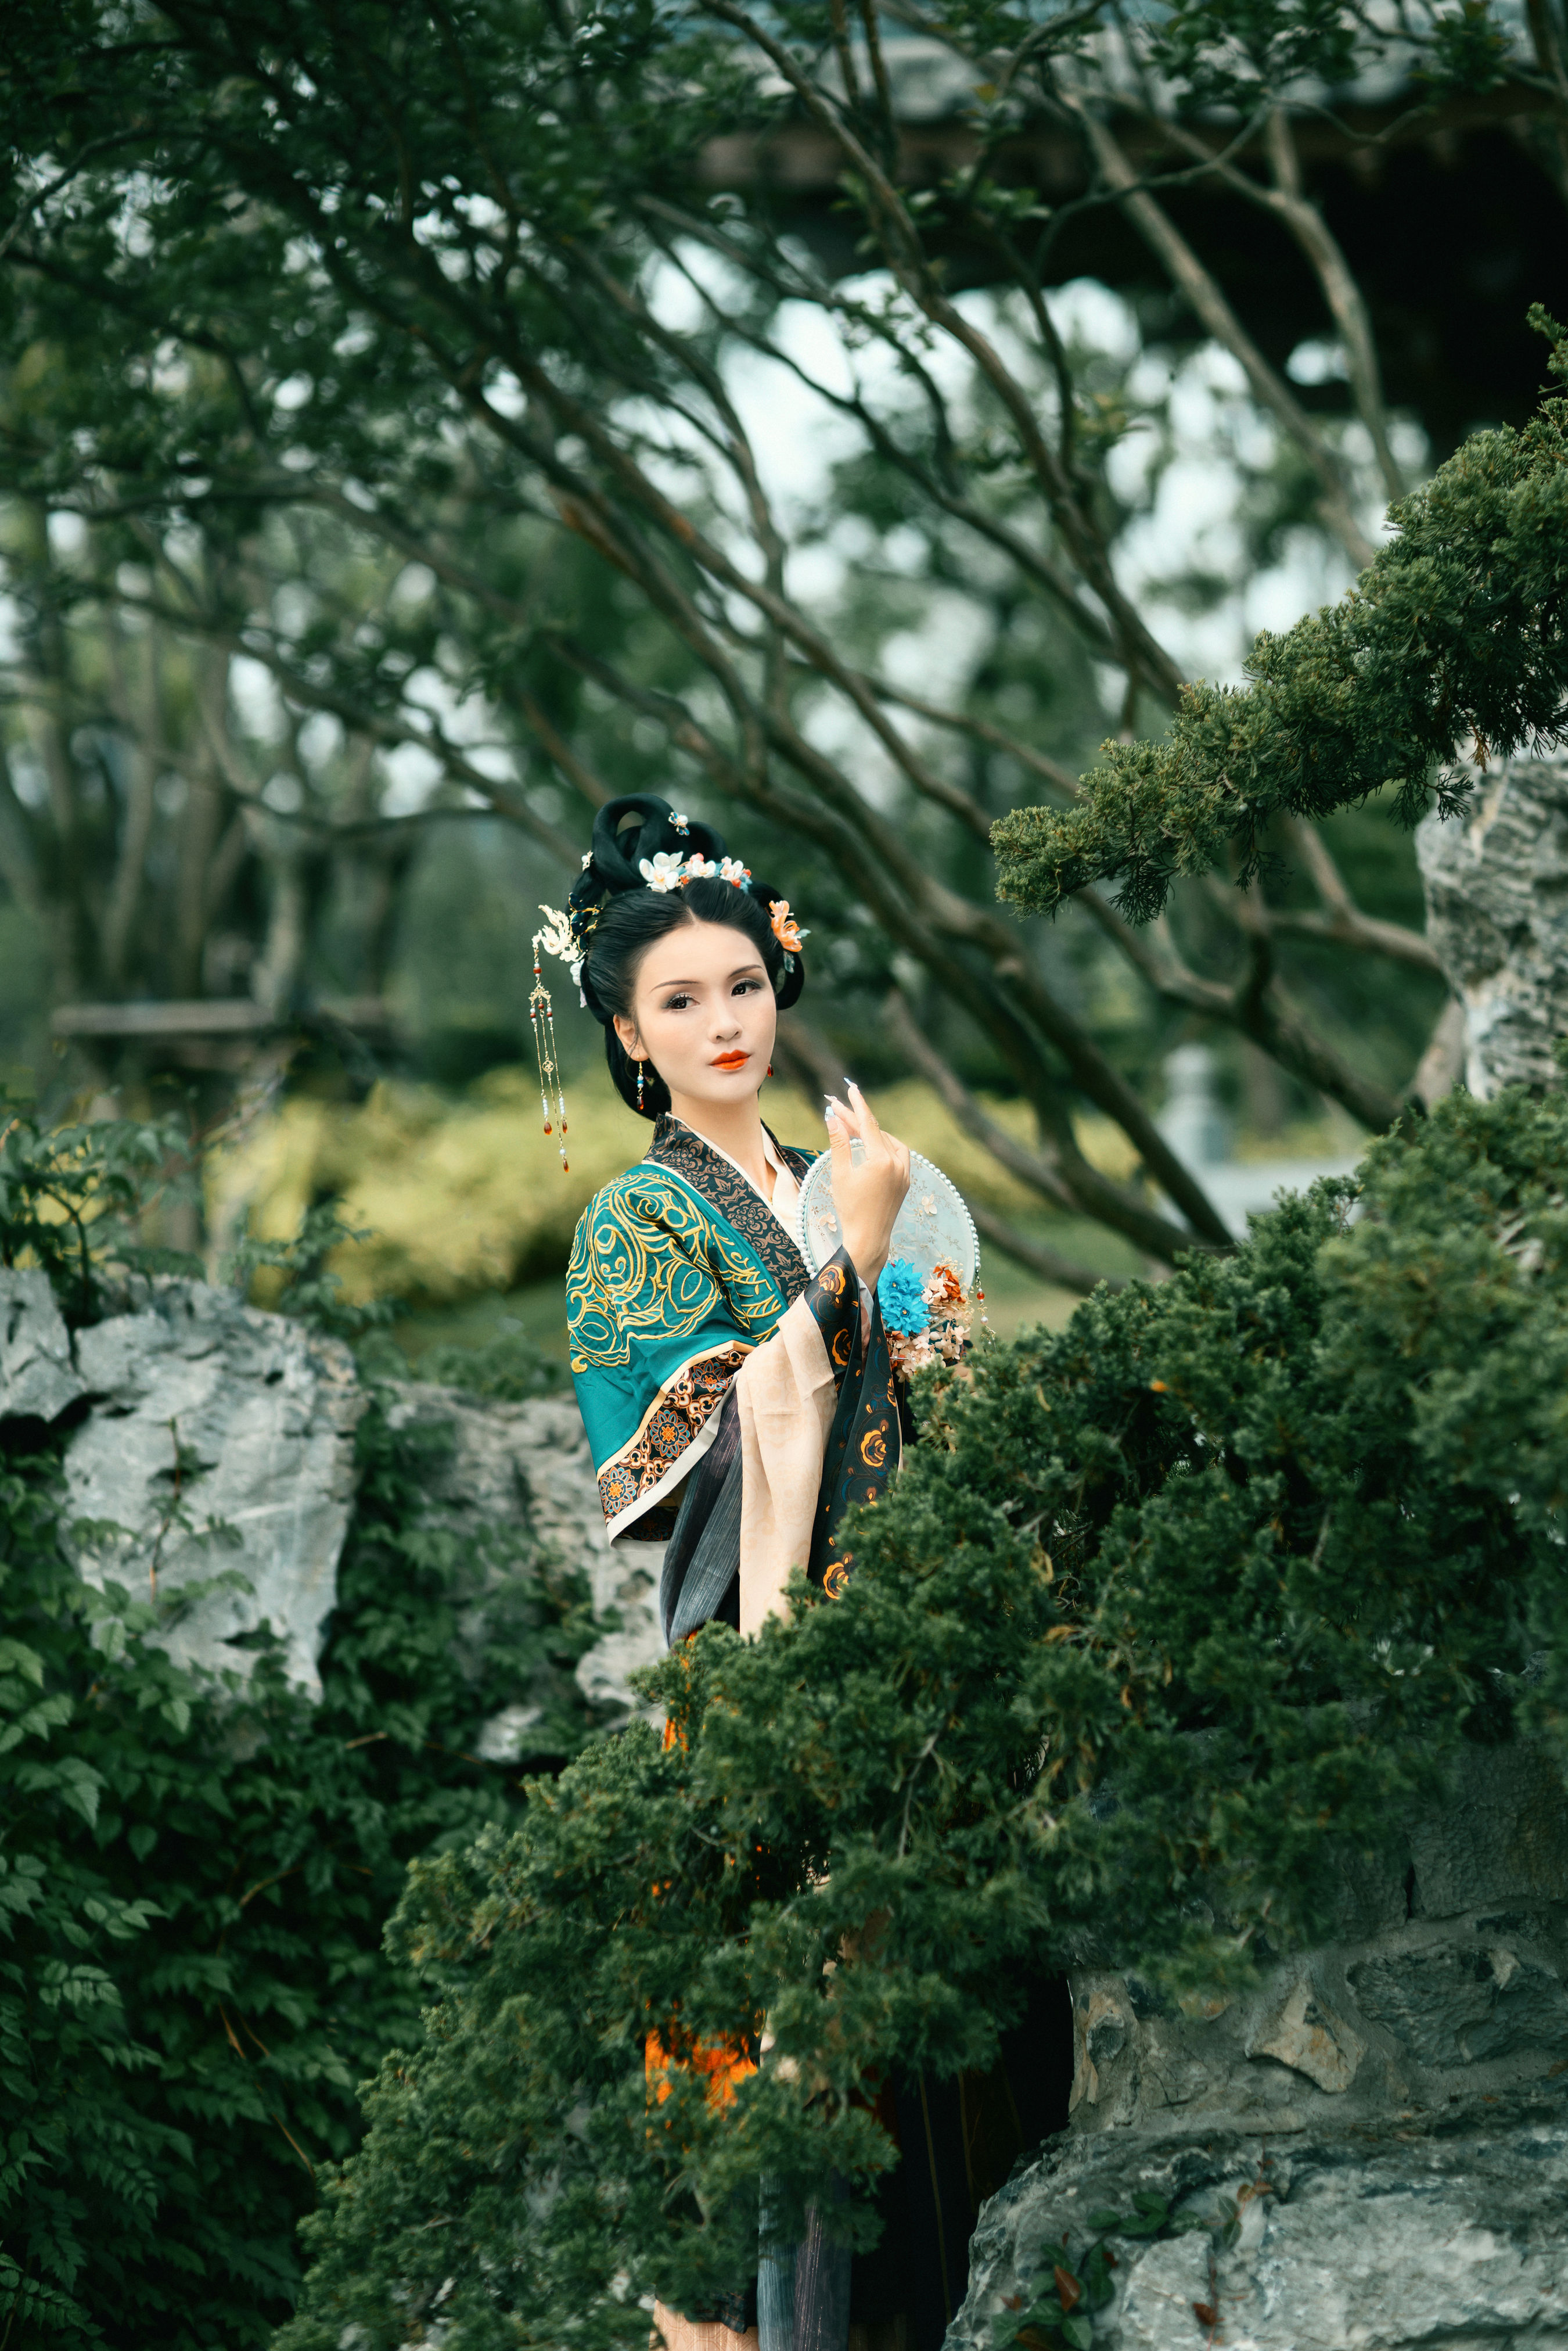 行香子 中国风 摄影 人像 艺术 绝色 绿色 唯美 美图 古典